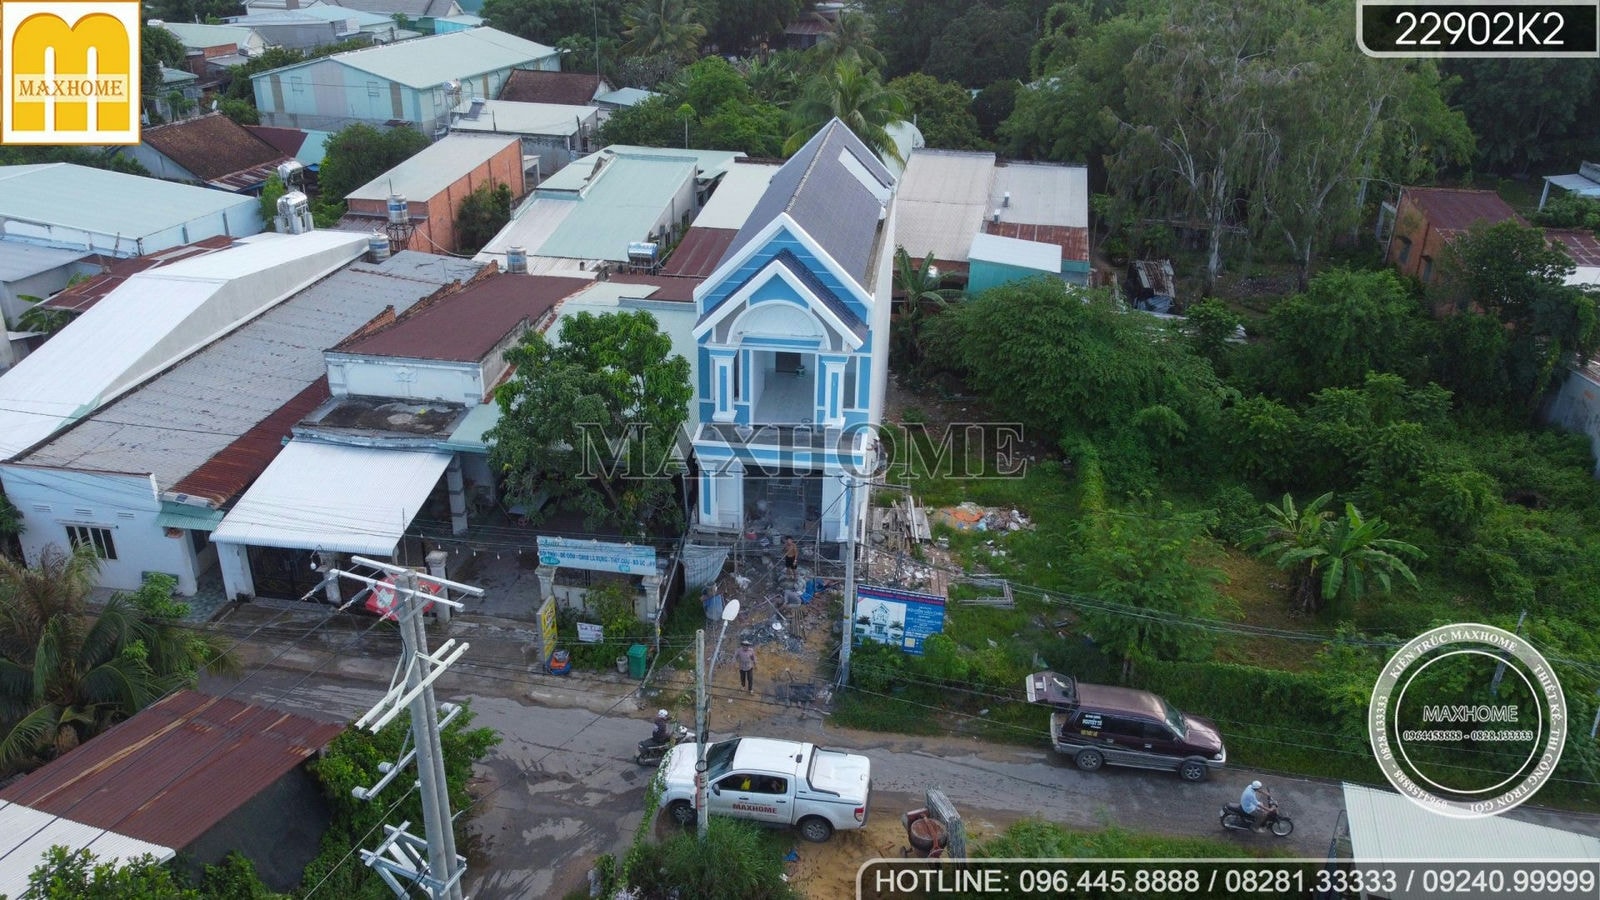 Ghé thăm tiến độ thi công nhà phố mái Thái 2 tầng ĐẸP KHÔNG CHỖ CHÊ | MH02326